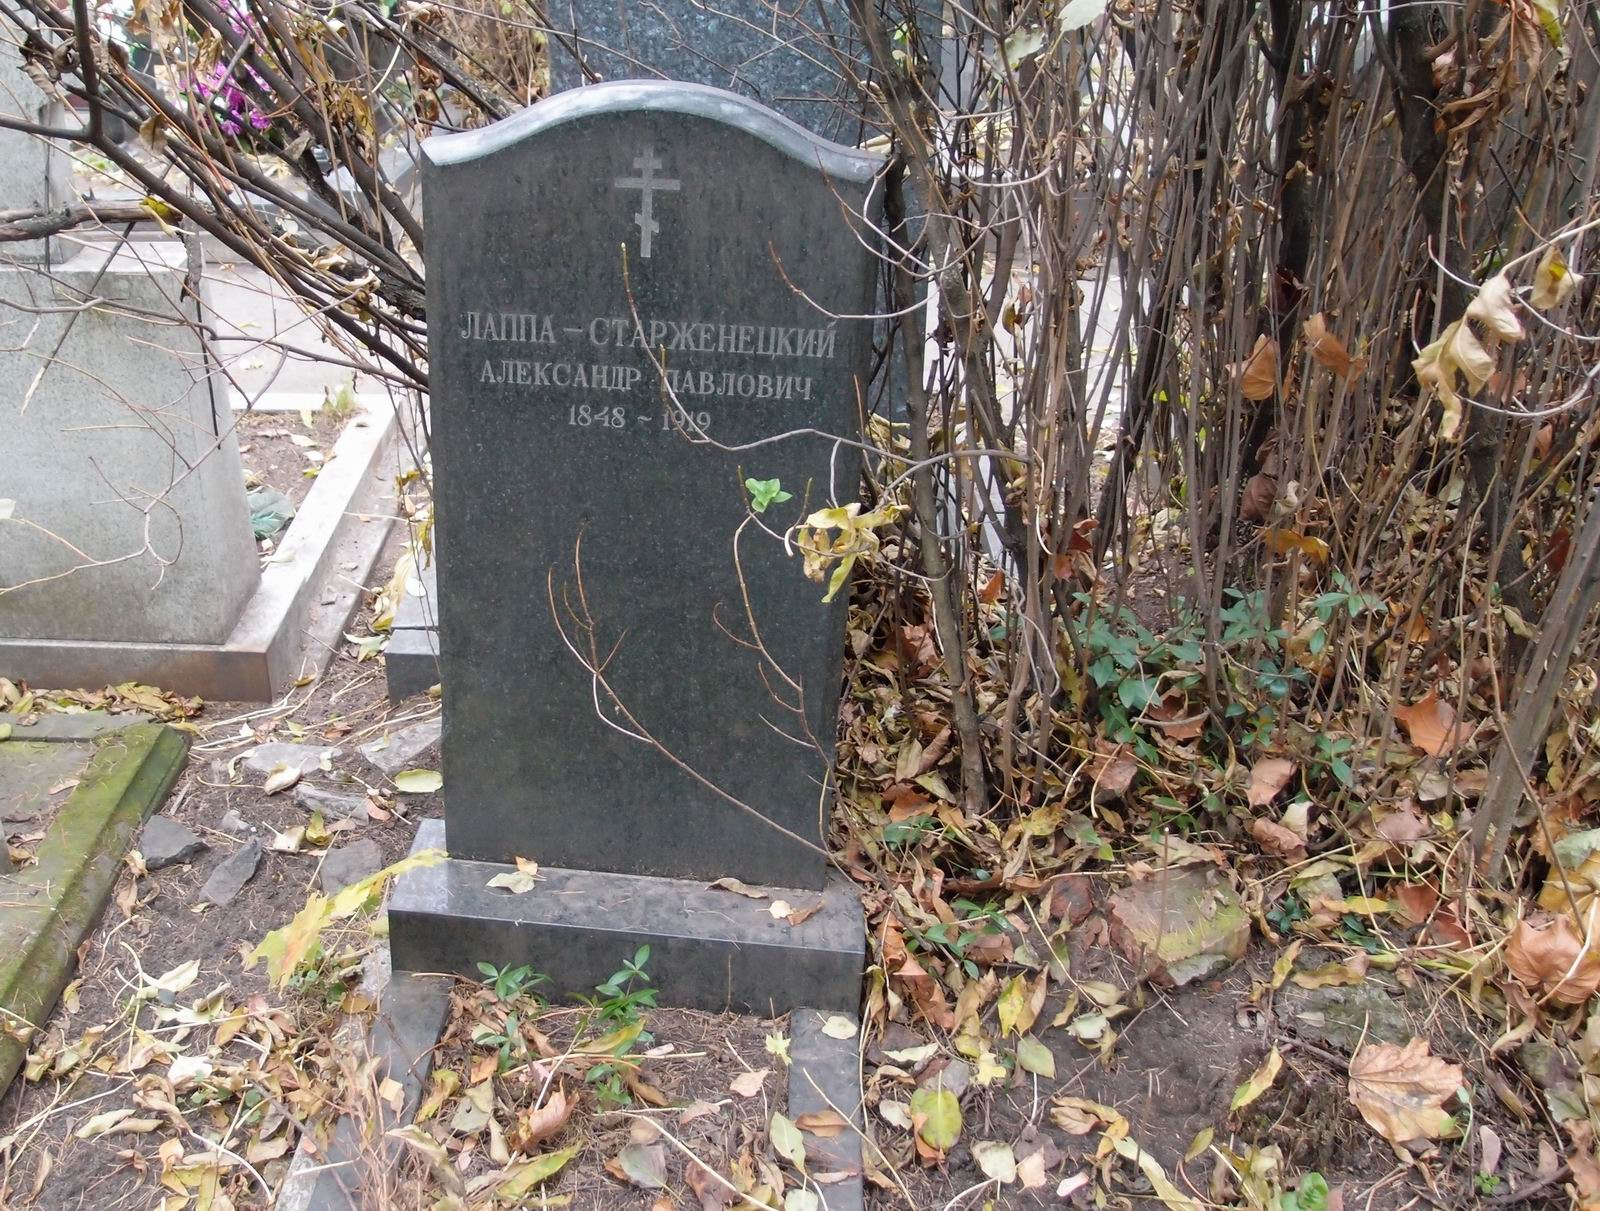 Памятник на могиле Лаппы-Старженецкого А.П. (1848-1919), на Новодевичьем кладбище (2-33-7).